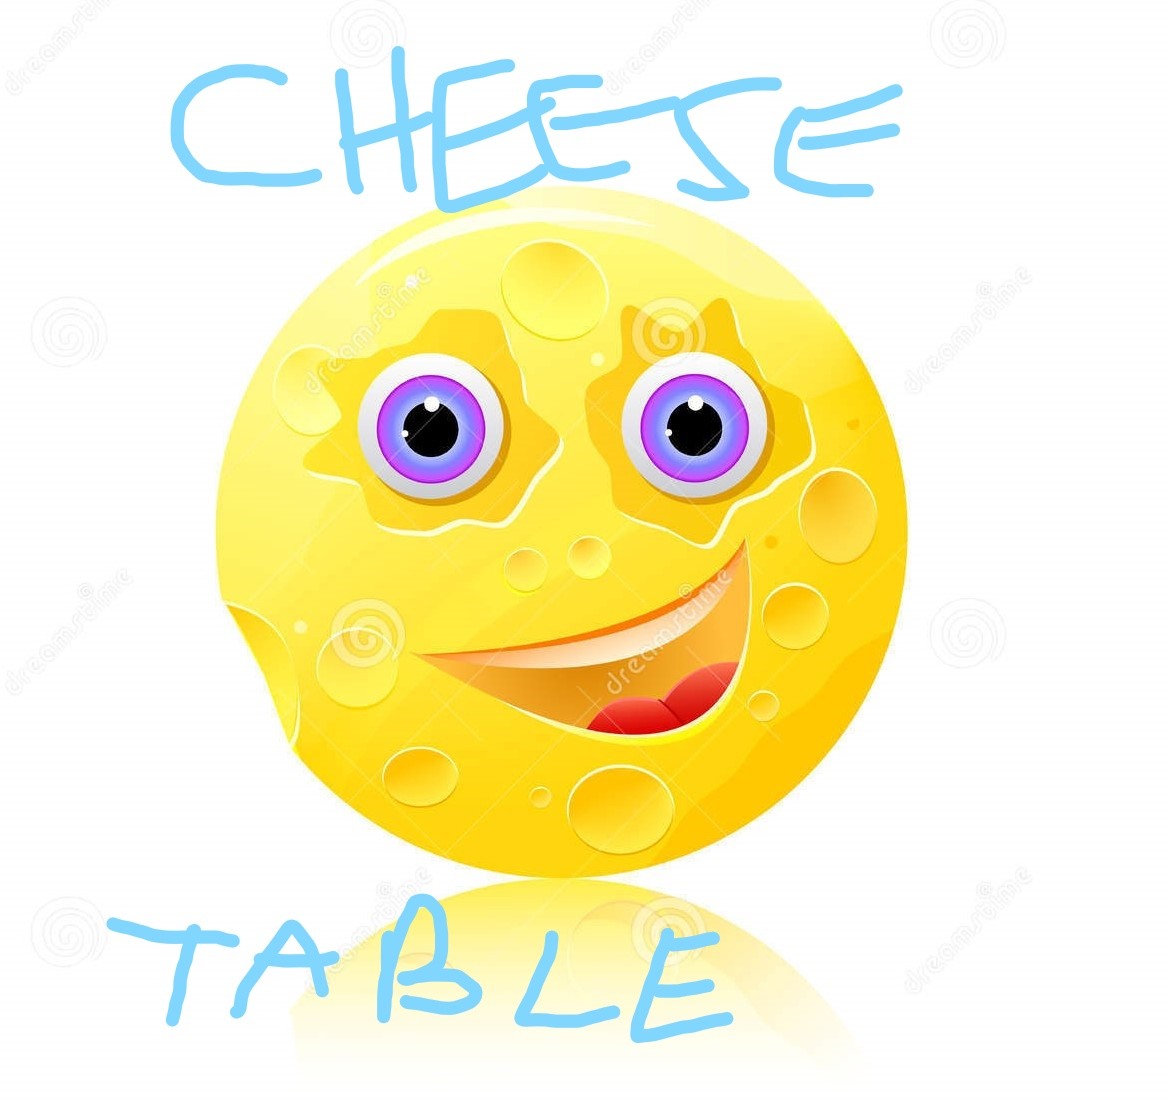 Inkedround-cheese-eyes-smile-icon-18286730